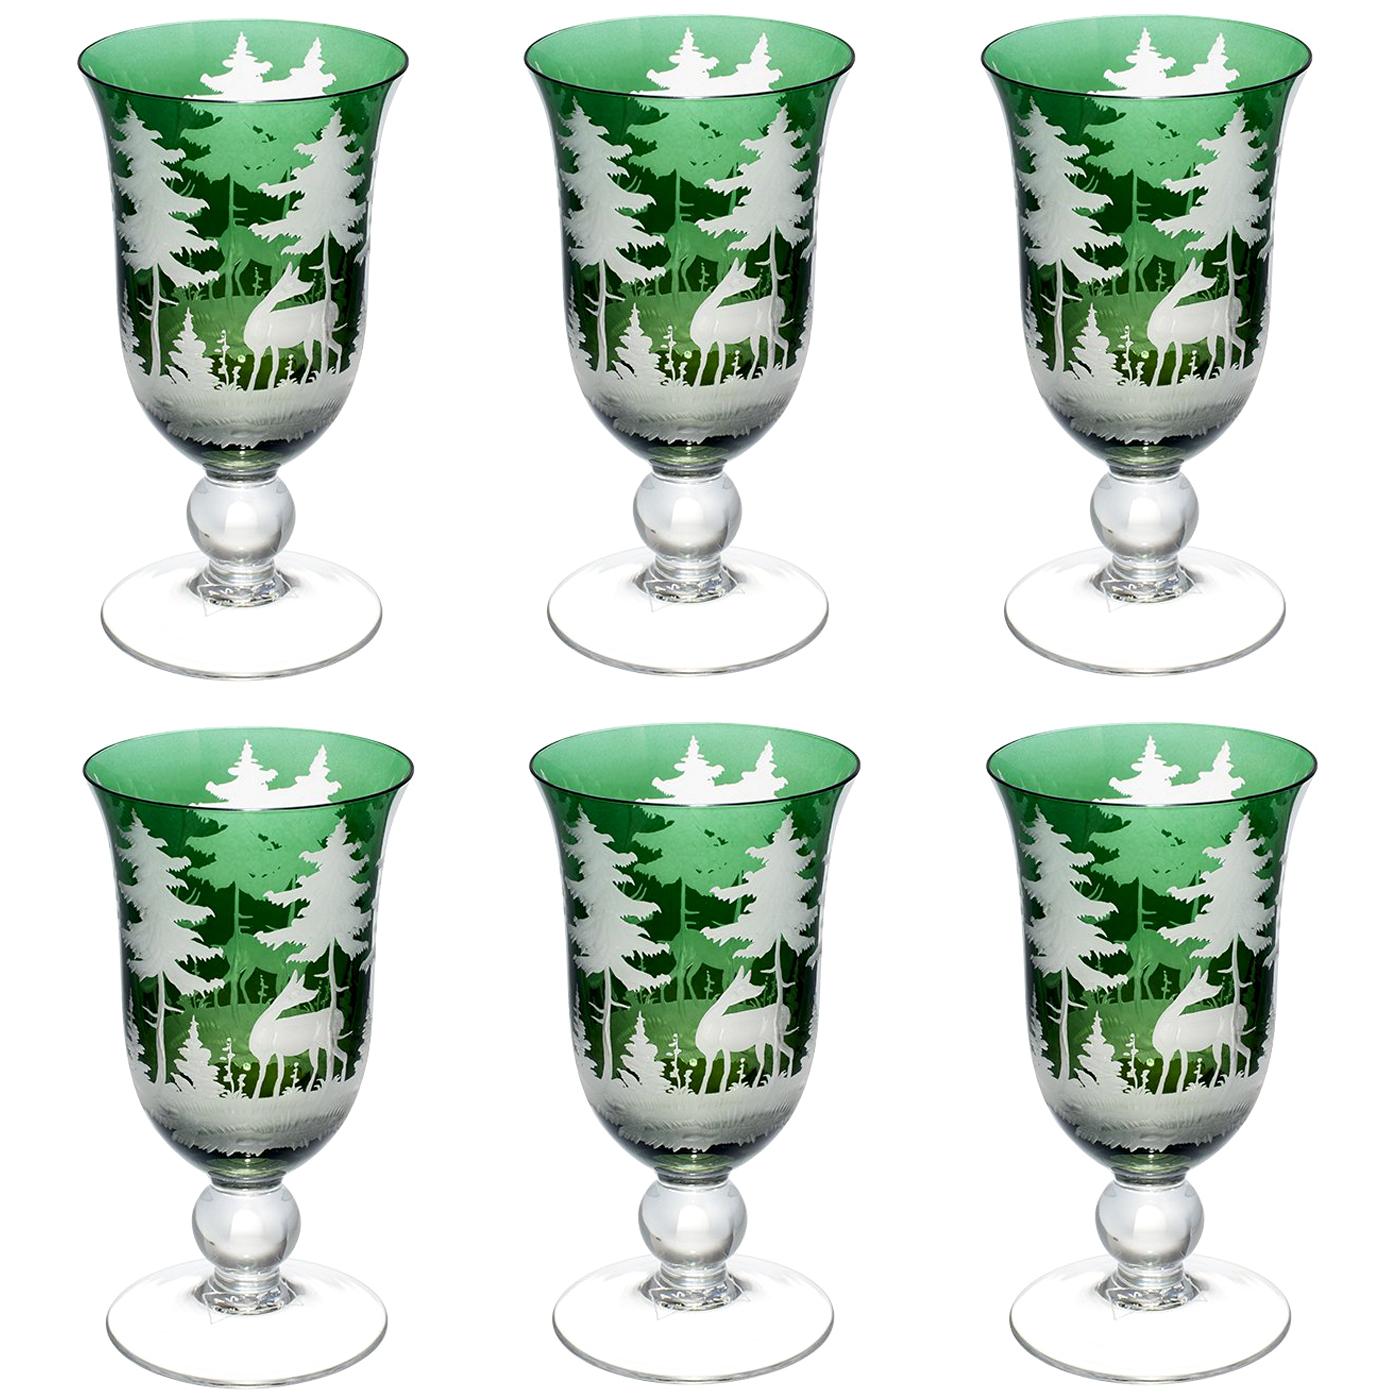 Sofina Boutique Kitzbuehel gobelet à vin en cristal vert soufflé à la main décoré de chasse